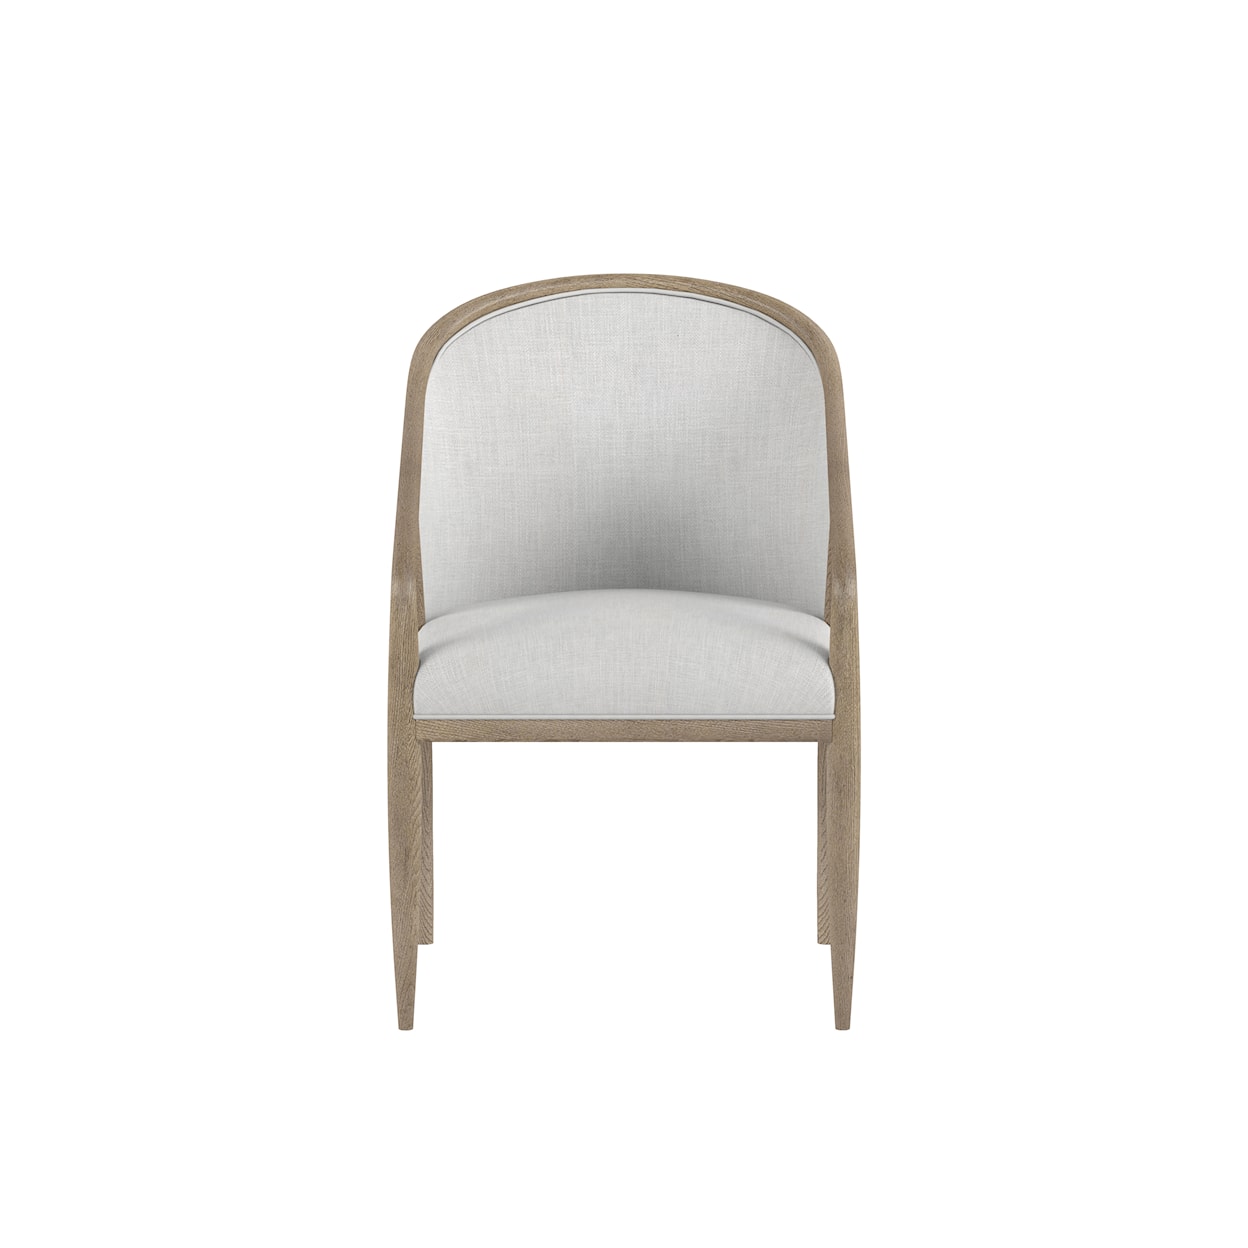 A.R.T. Furniture Inc Finn Dining Chair